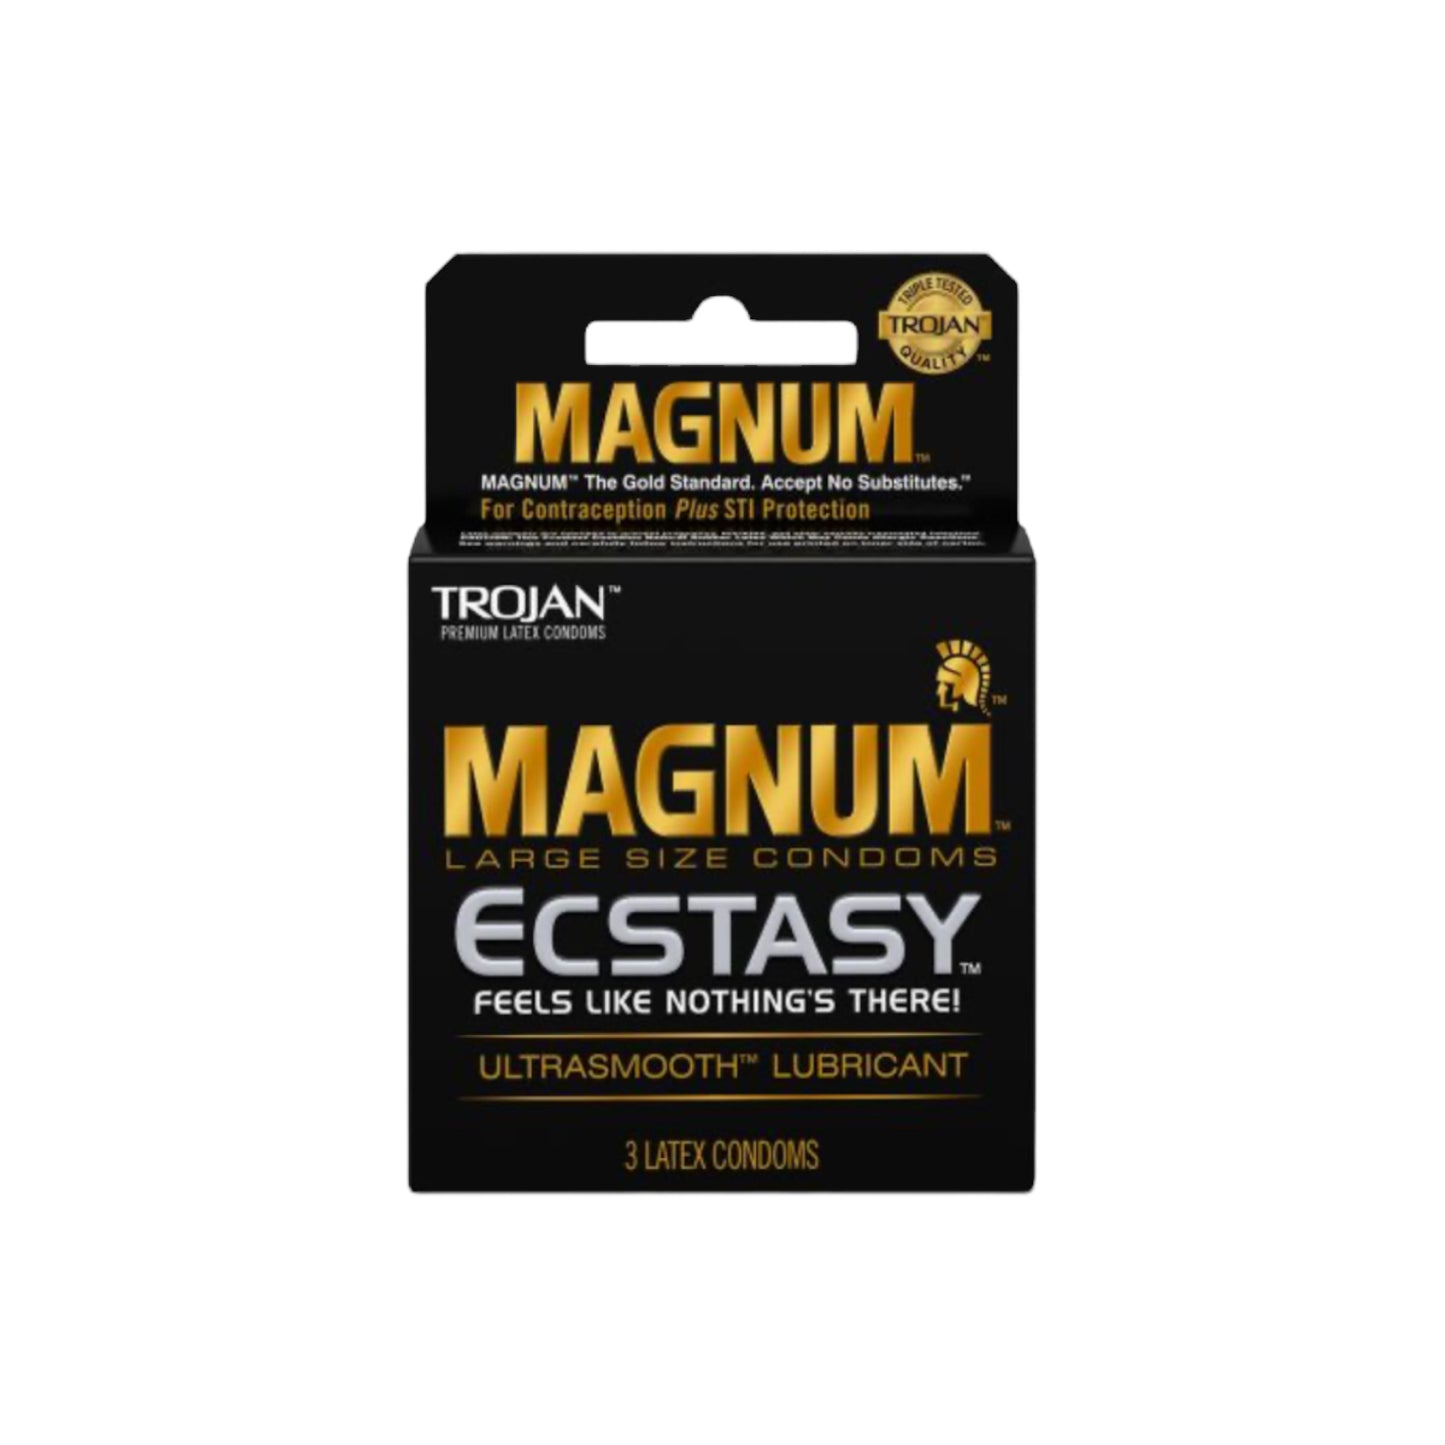 Trojan Magnum Ecstasy Condoms 6 Packs of 3